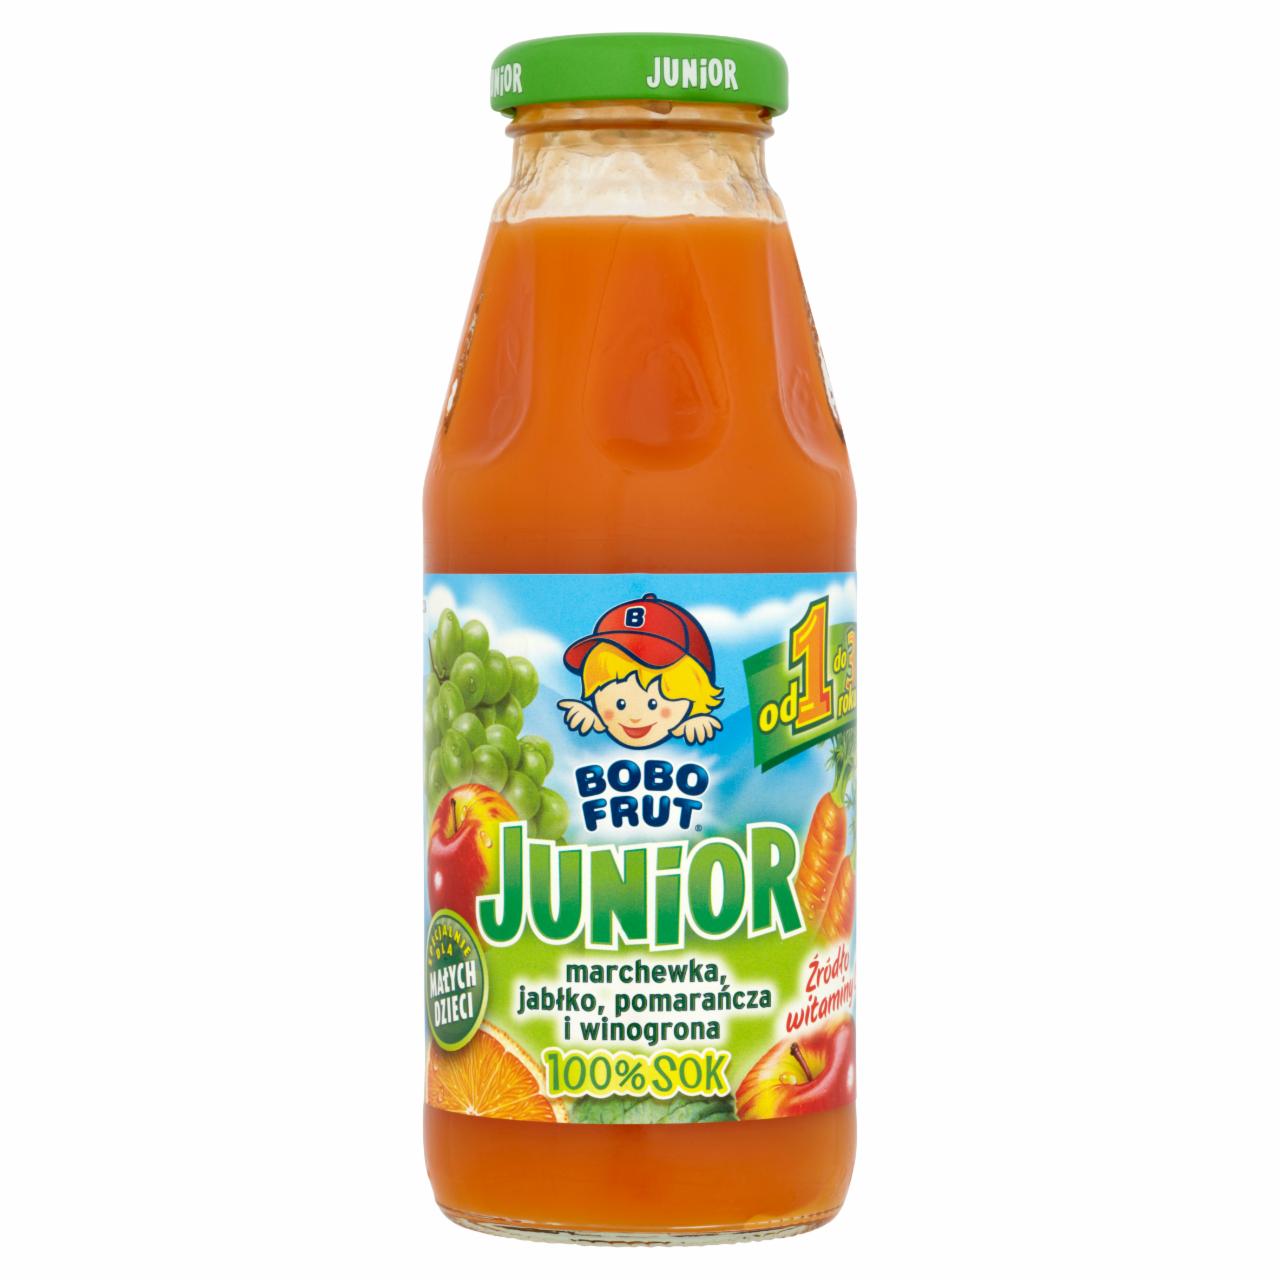 Zdjęcia - Bobo Frut Junior 100% Sok marchewka jabłko pomarańcza i winogrona od 1 do 3 roku 300 ml